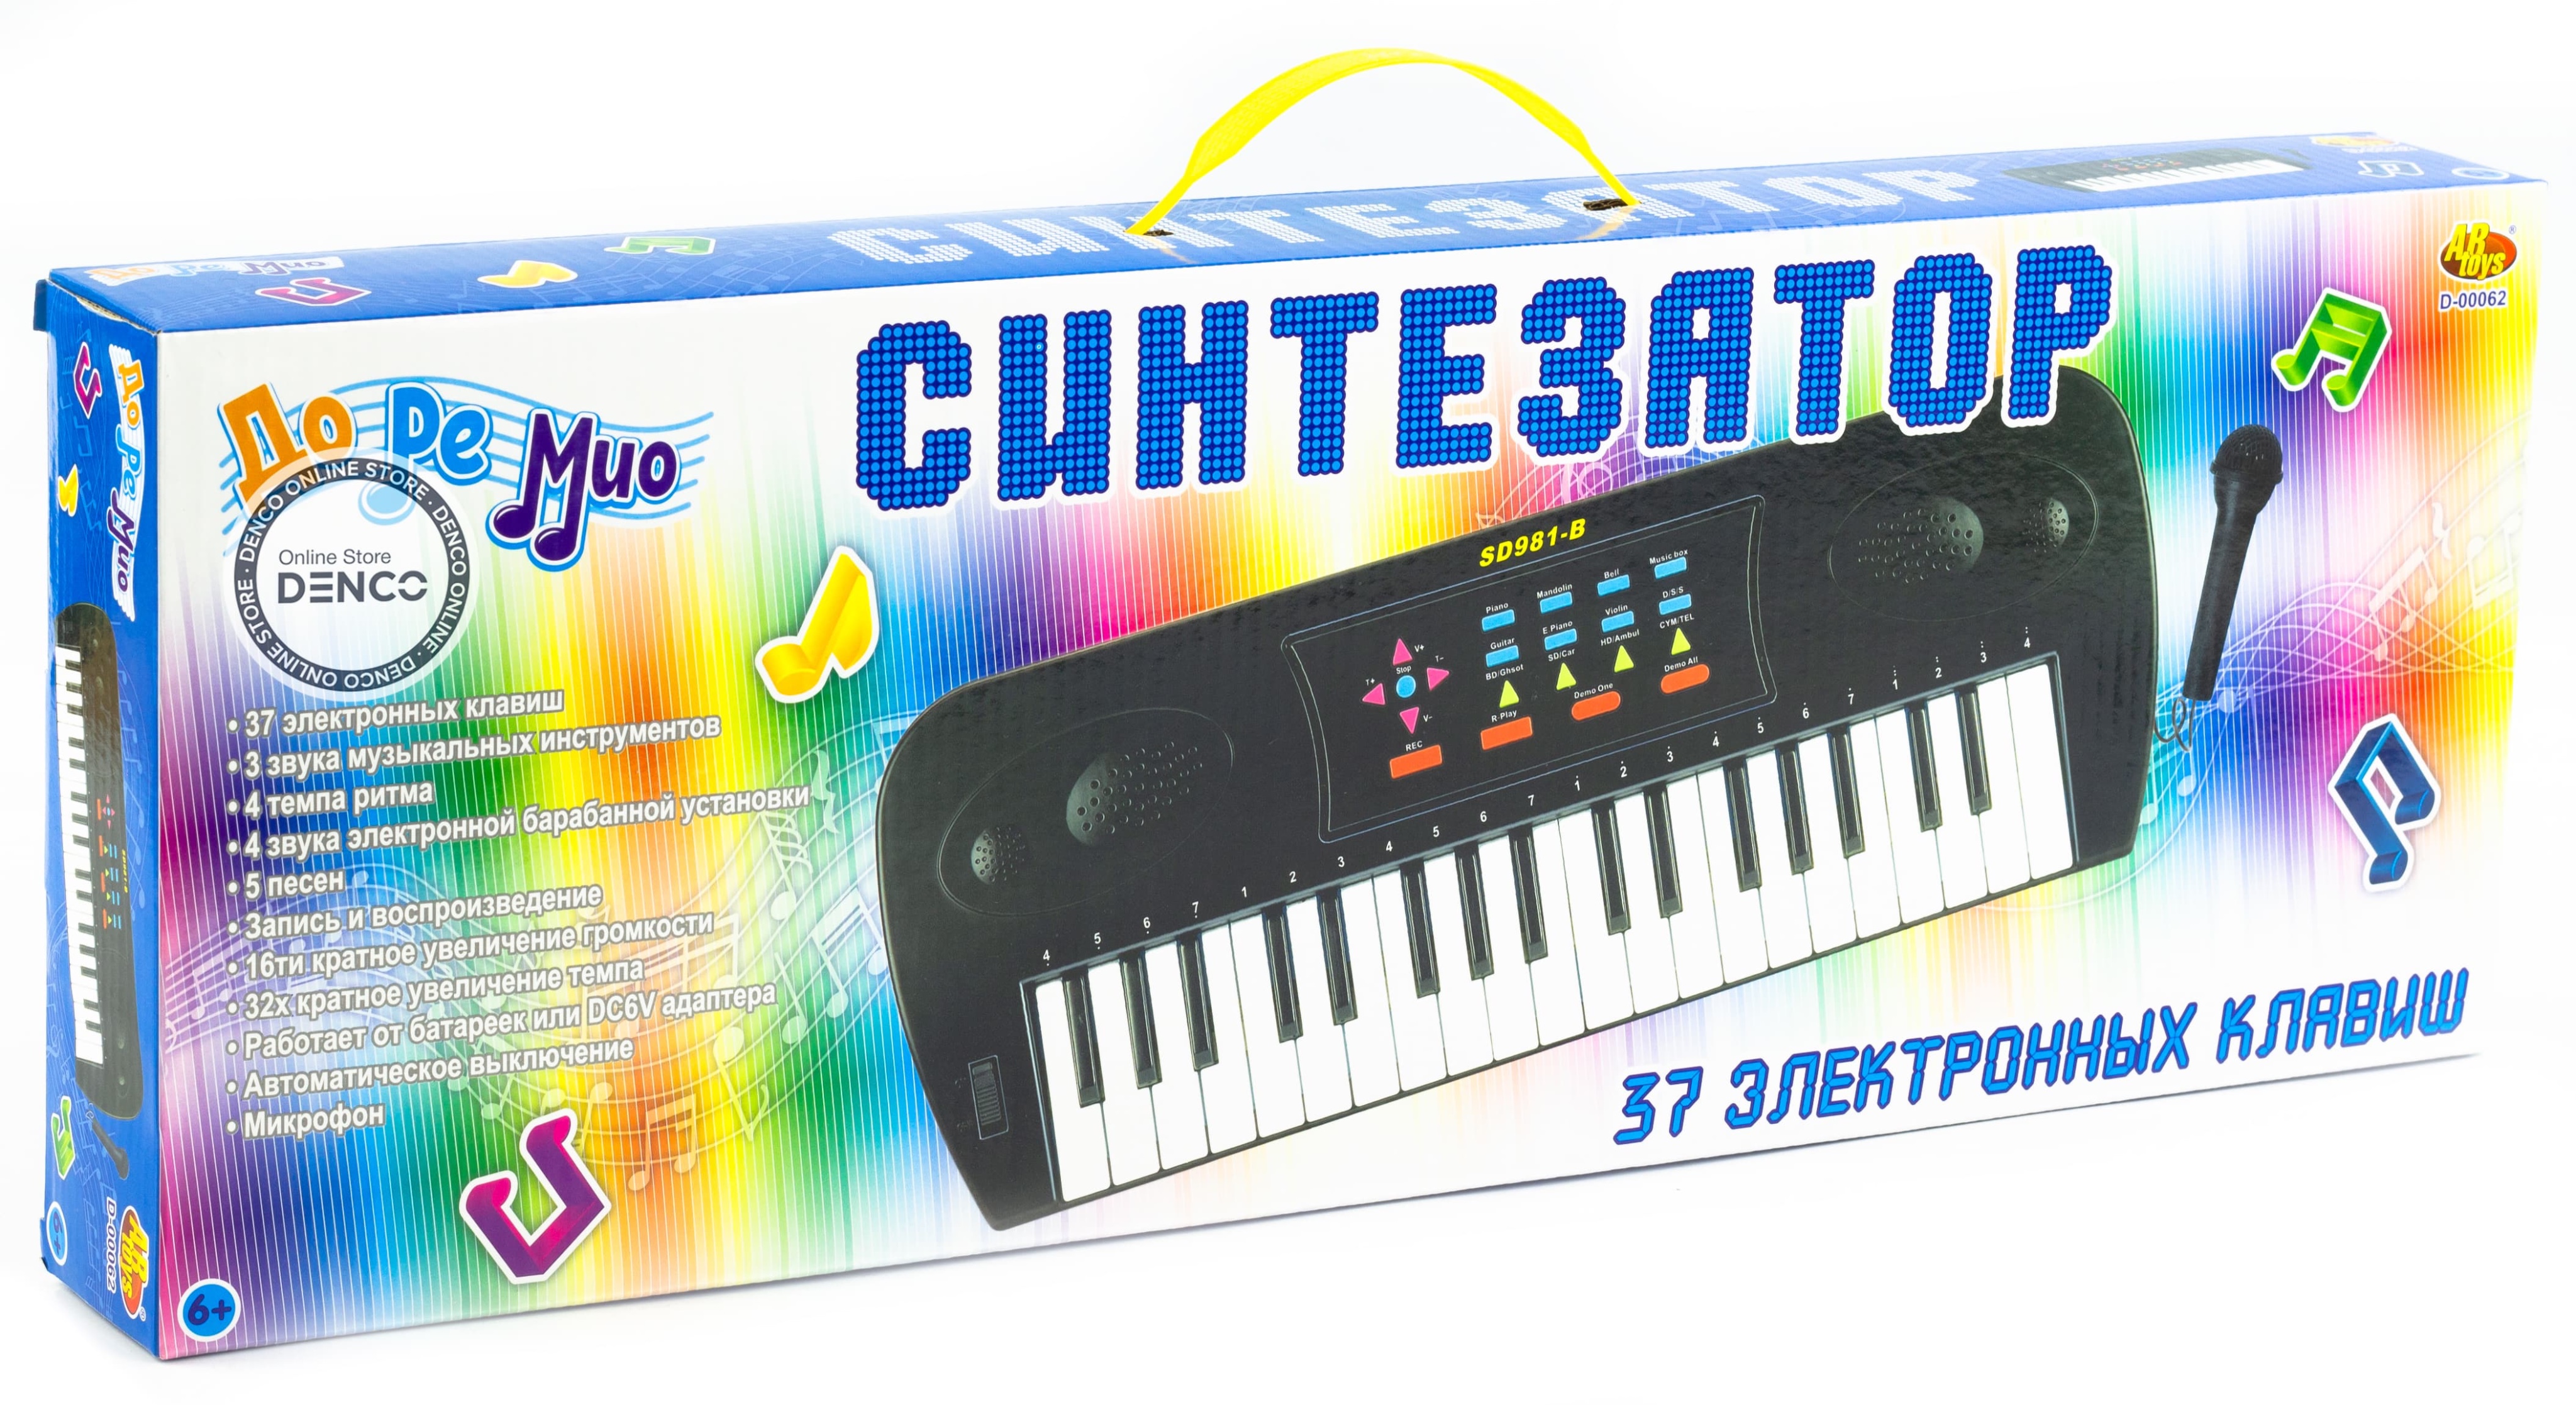 Синтезатор 37 клавиш, с микрофоном, эл/мех, с адаптером в комплекте, 53 x 6 x 19.2 см, ABtoys / D-00062